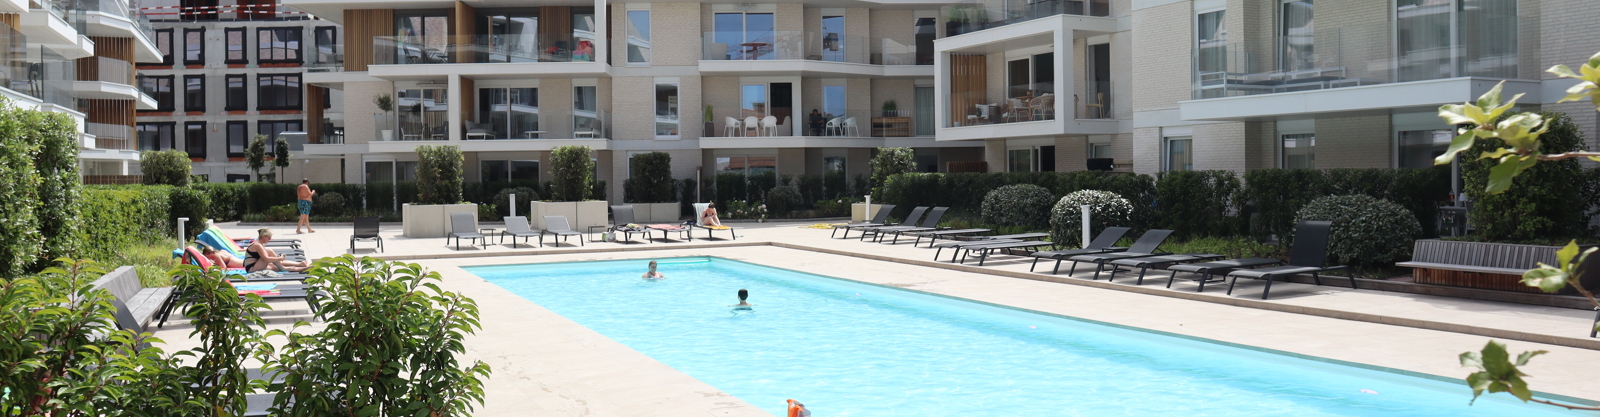 Appartementen met een zwembad